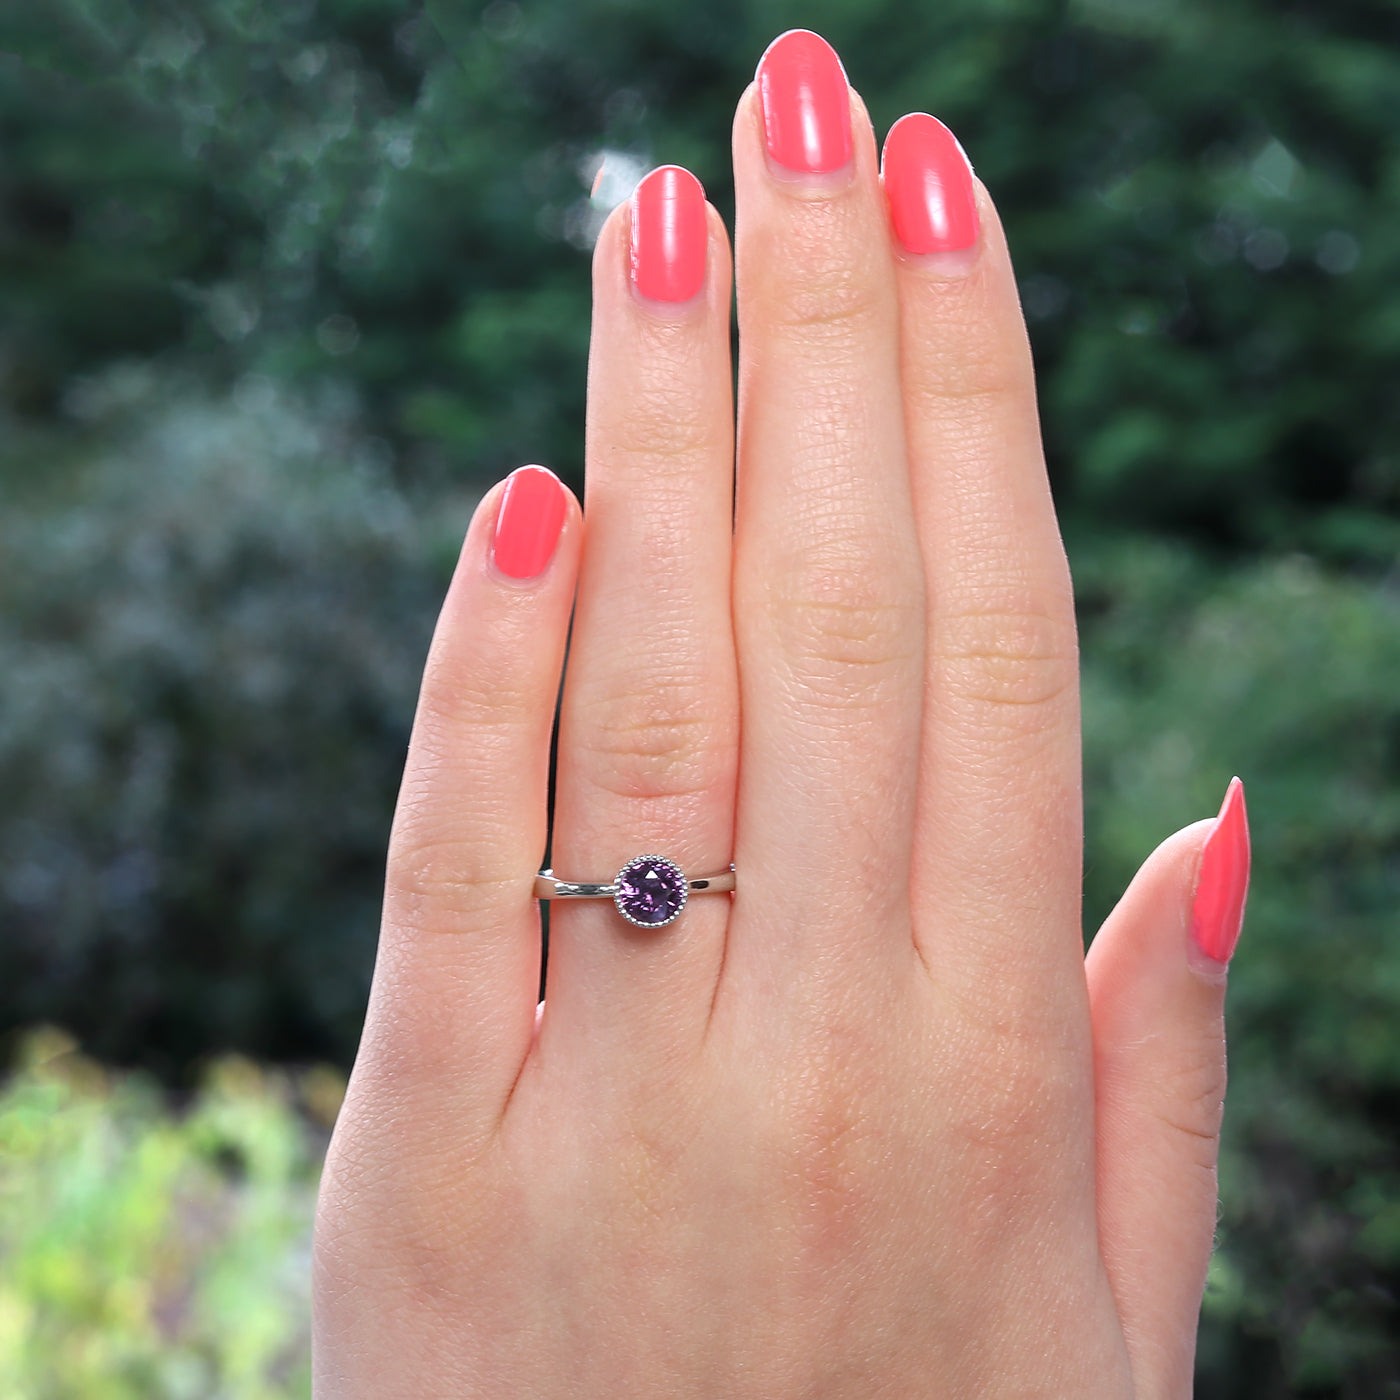 Purple Sapphire Ring in Platinum